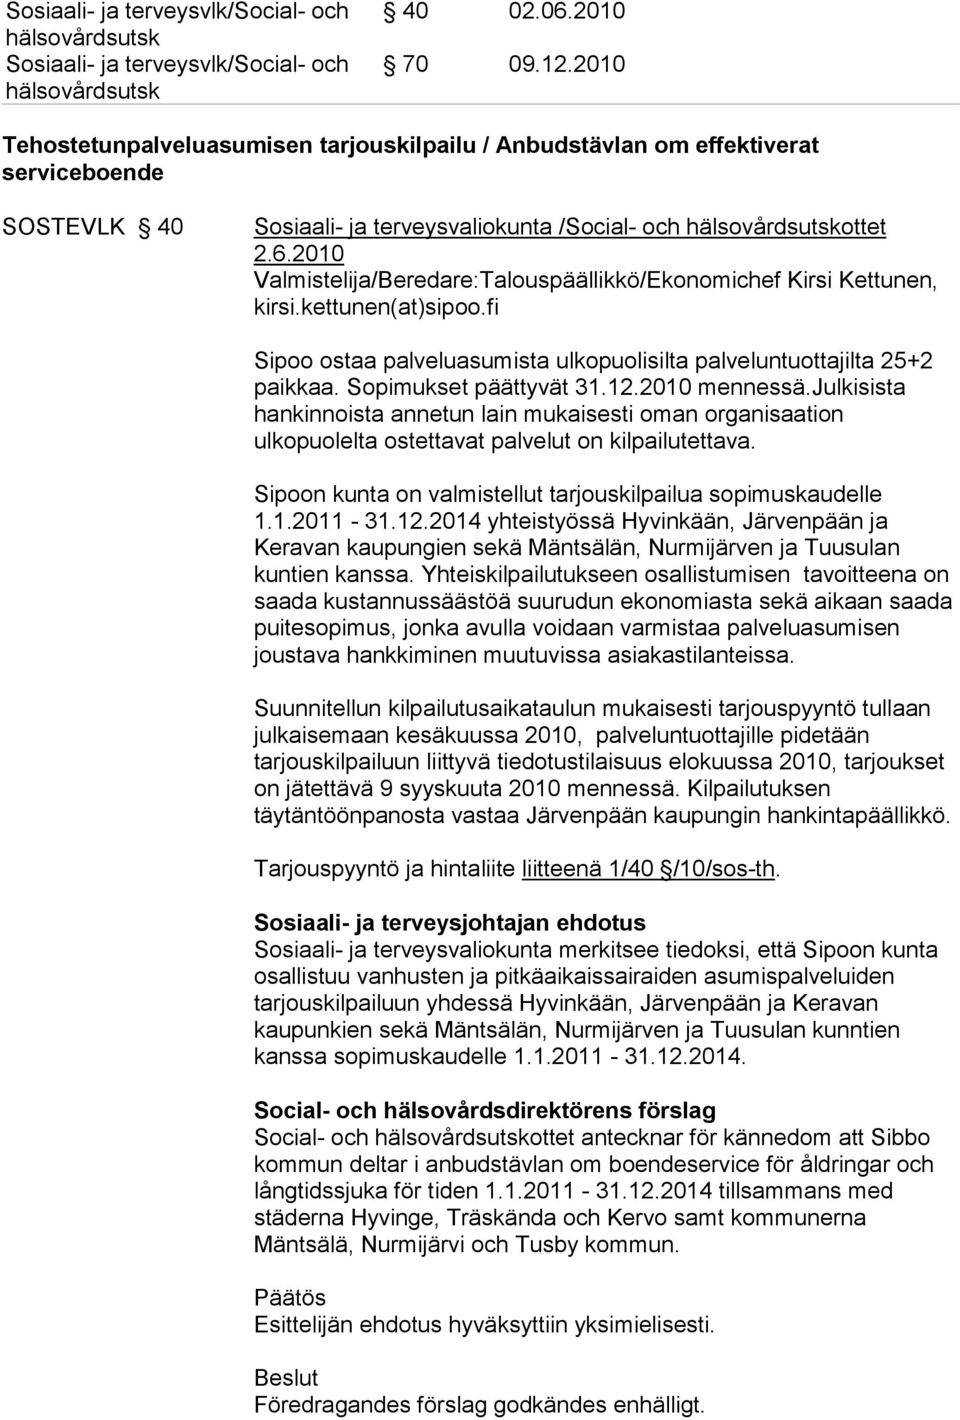 2010 Valmistelija/Beredare:Talouspäällikkö/Ekonomichef Kirsi Kettunen, kirsi.kettunen(at)sipoo.fi Sipoo ostaa palveluasumista ulkopuolisilta palveluntuottajilta 25+2 paikkaa. Sopimukset päättyvät 31.